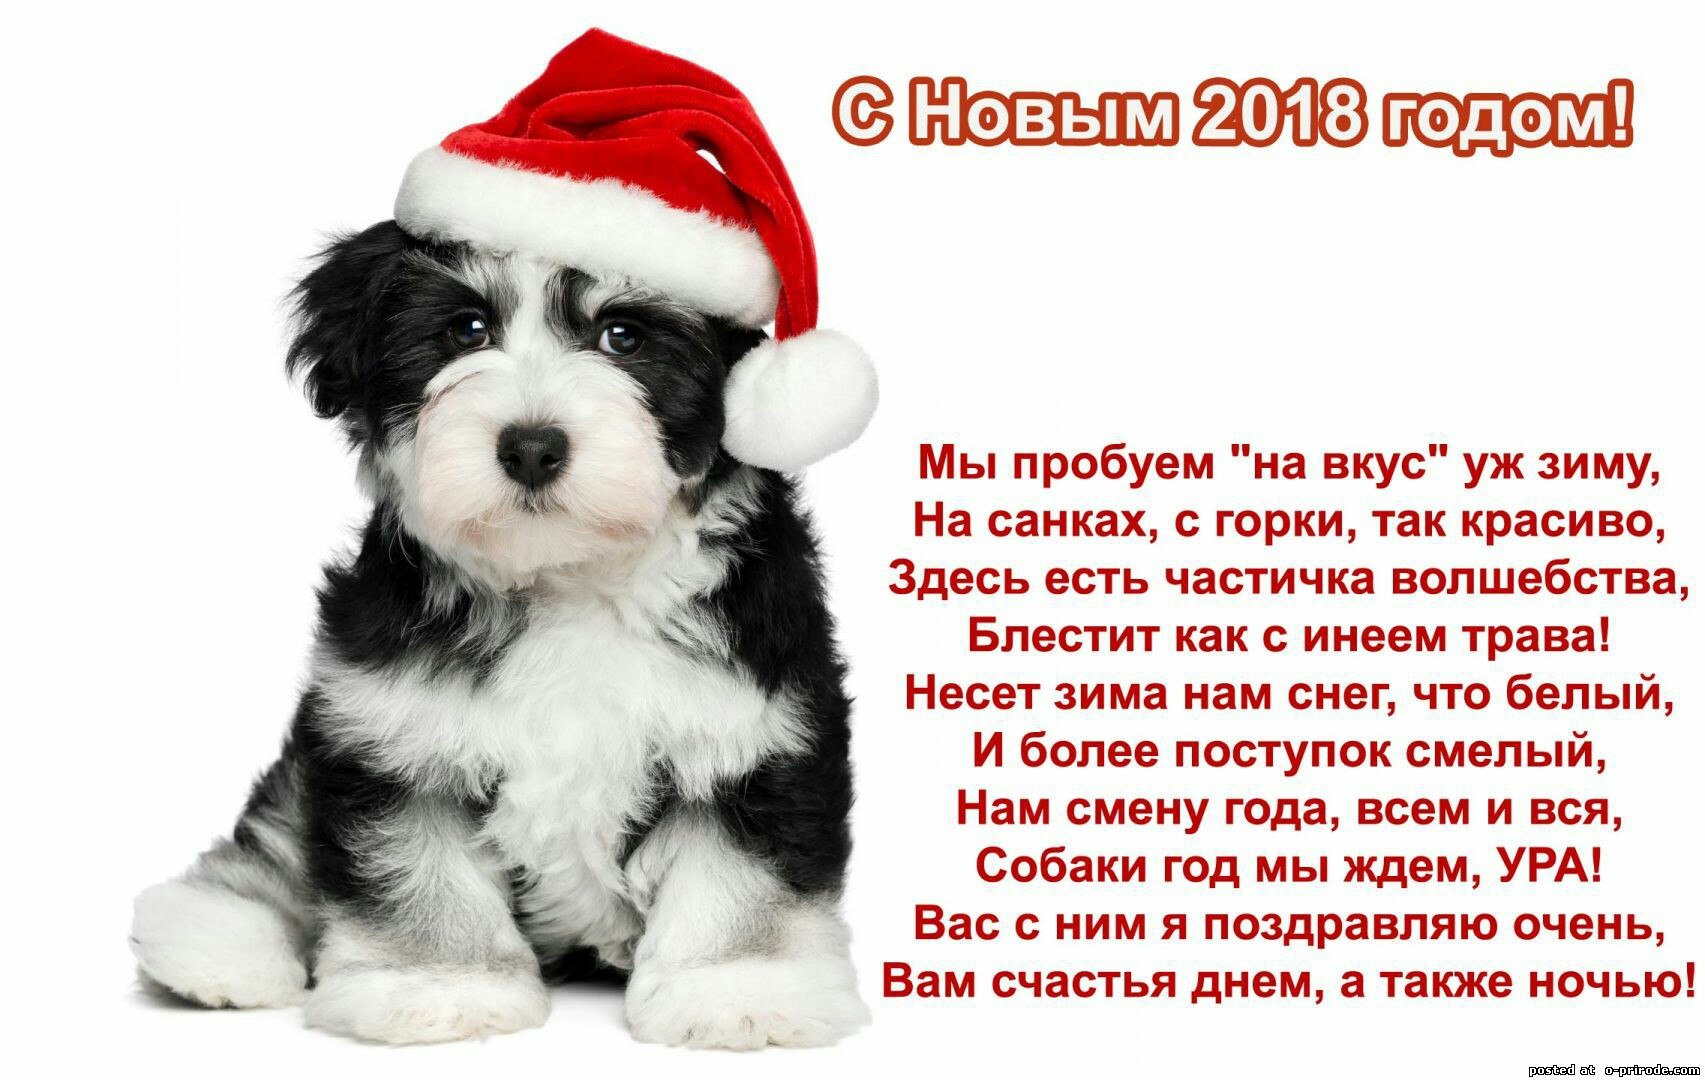 Год собаки начнется. Стихи для детей новогодние год собаки. Стихи к новому году собаки. Новогодние стихи про собак. Новогоднее четверостишие с собакой.